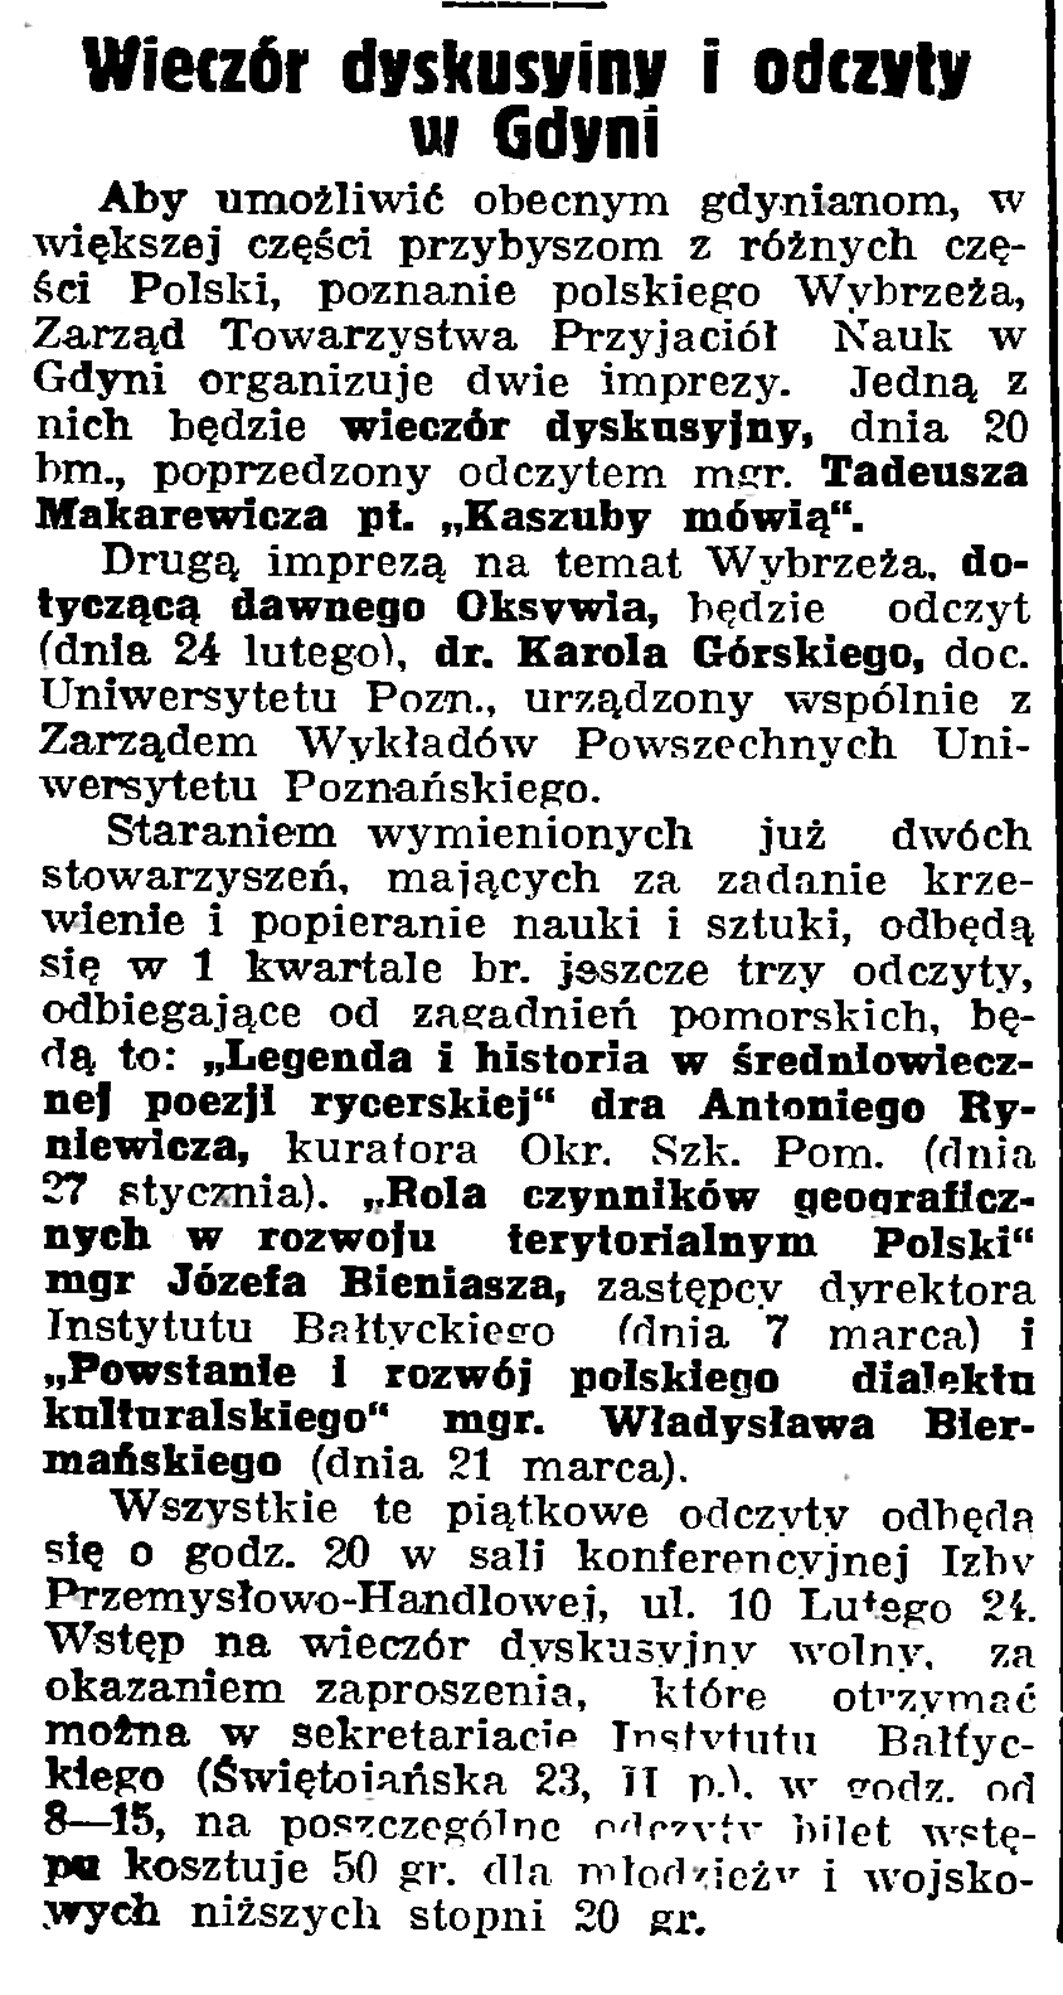 Wieczór dyskusyjny w Gdyni // Gazeta Gdańska. - 1939, nr 13, s. 6